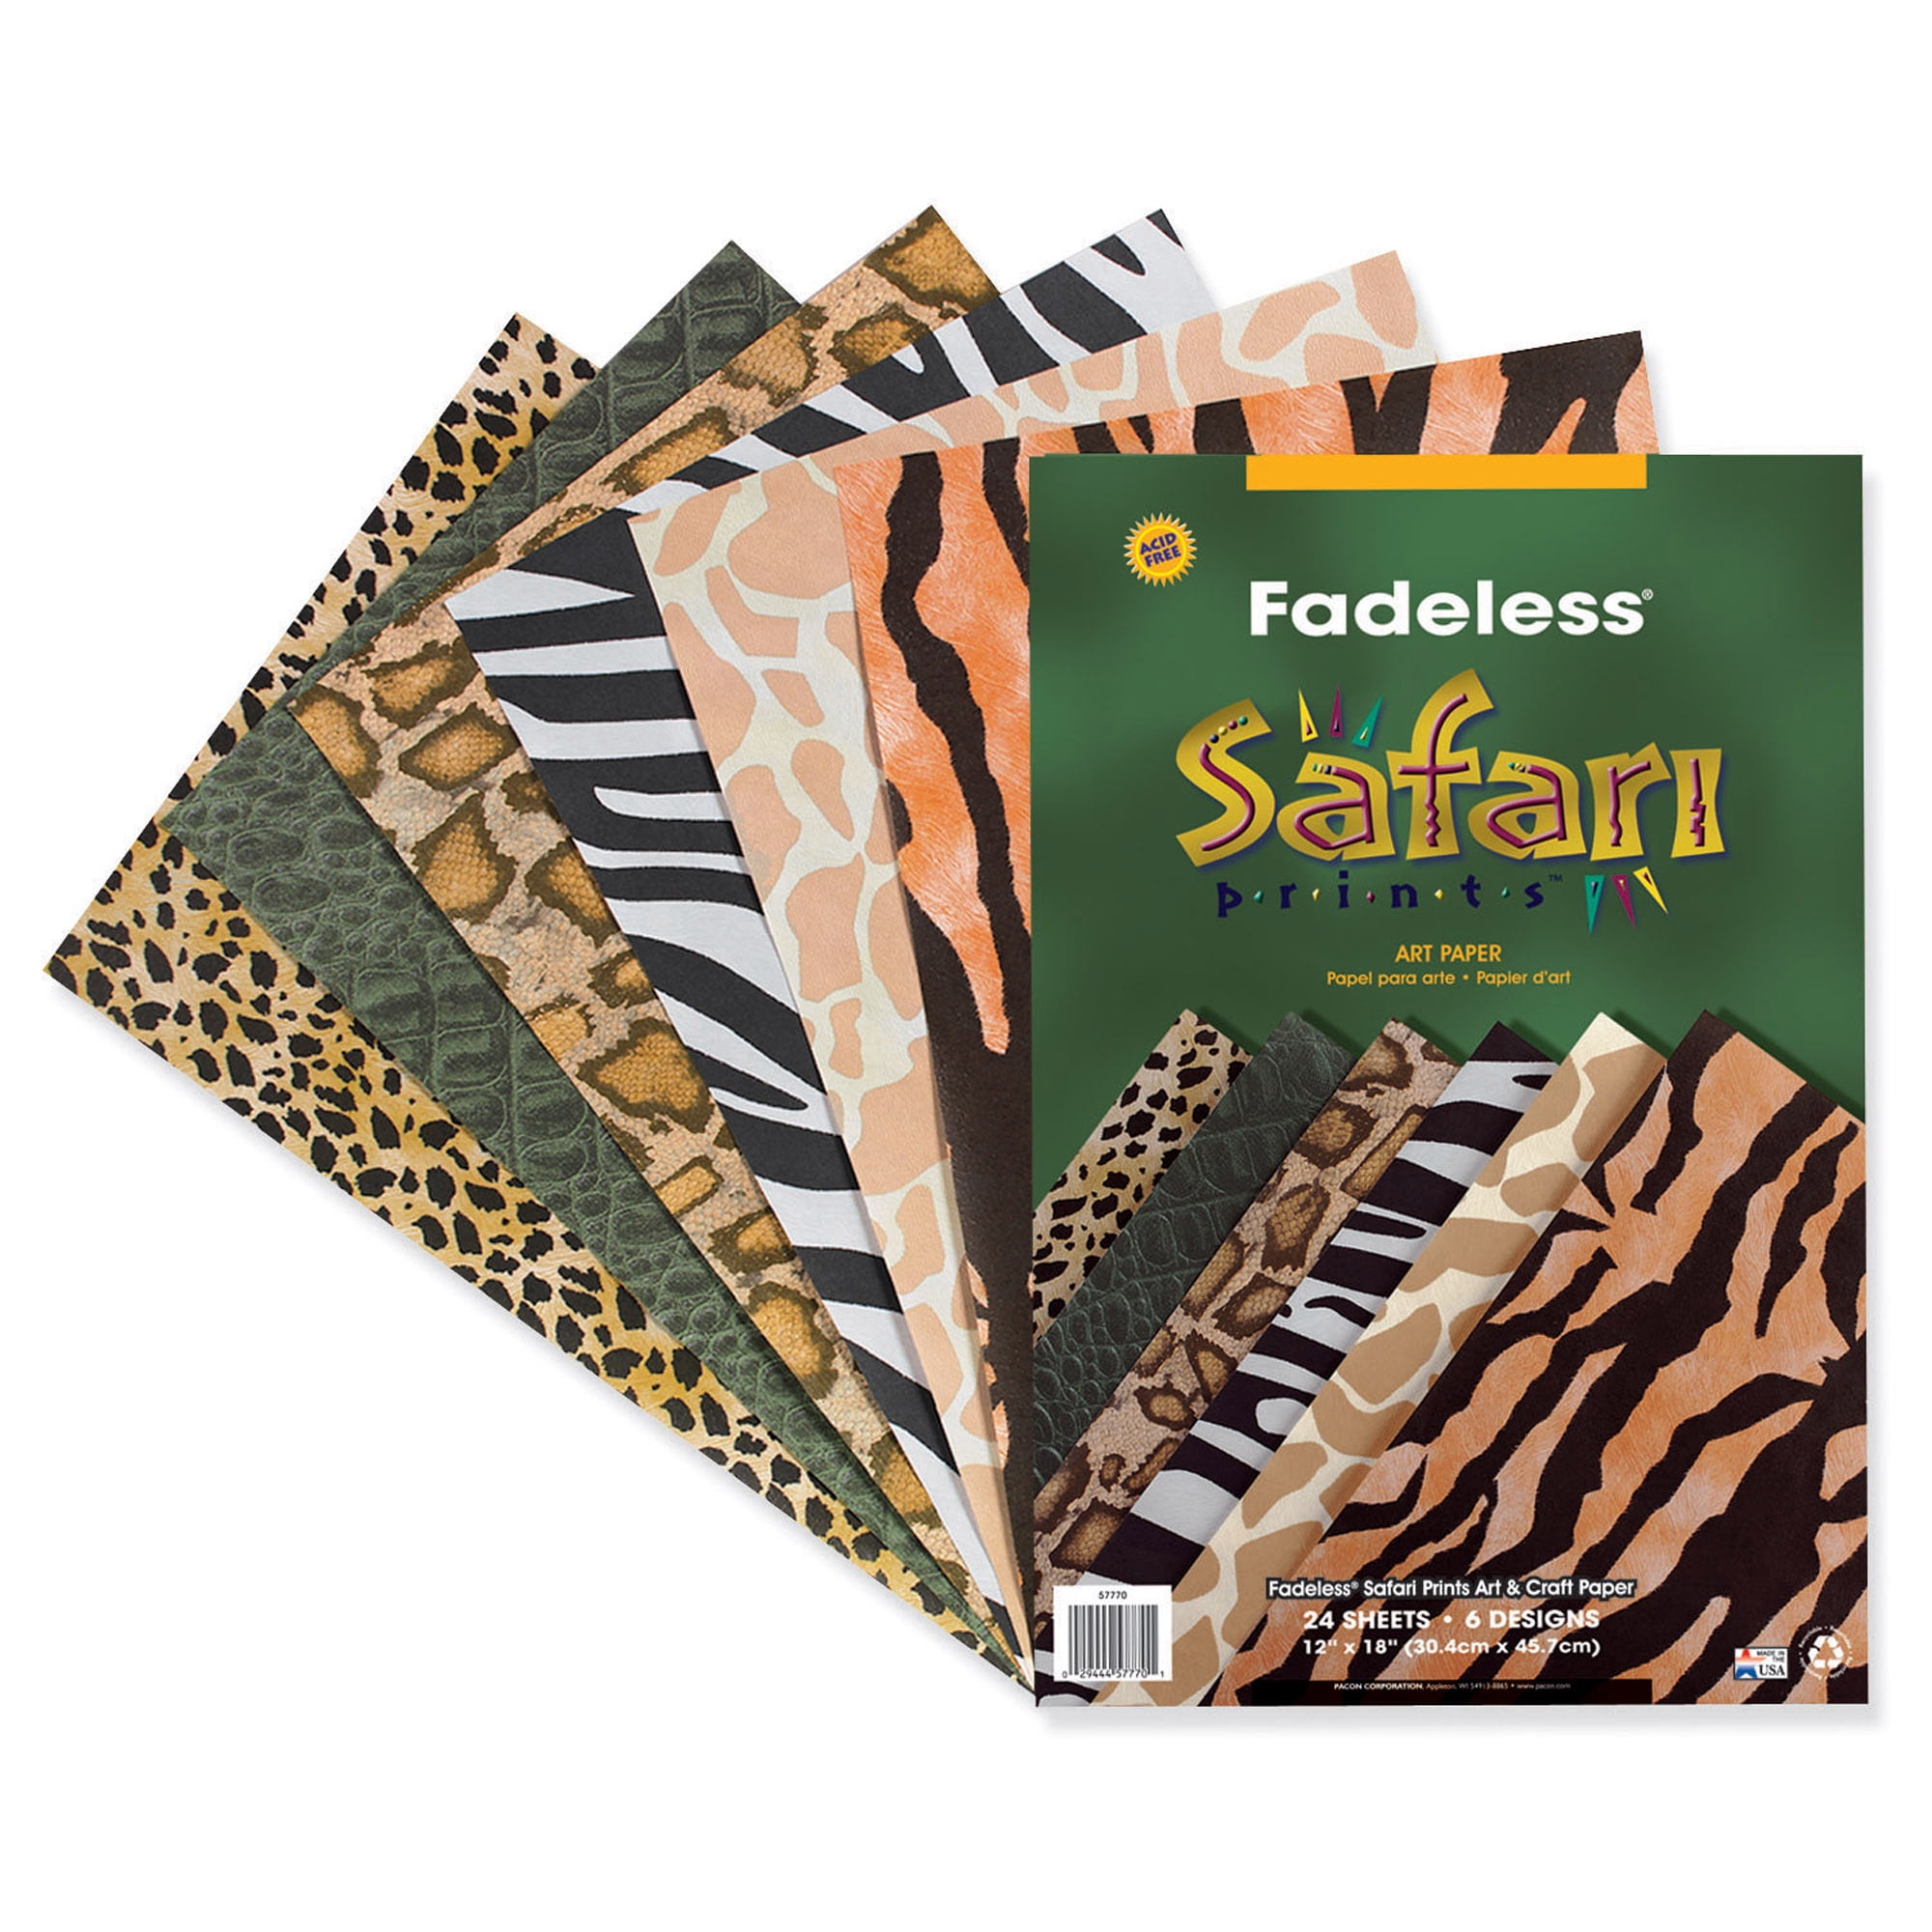 14 4-Pack Safari Animal Print Cheetah Giraffe Tiger Zebra Paper